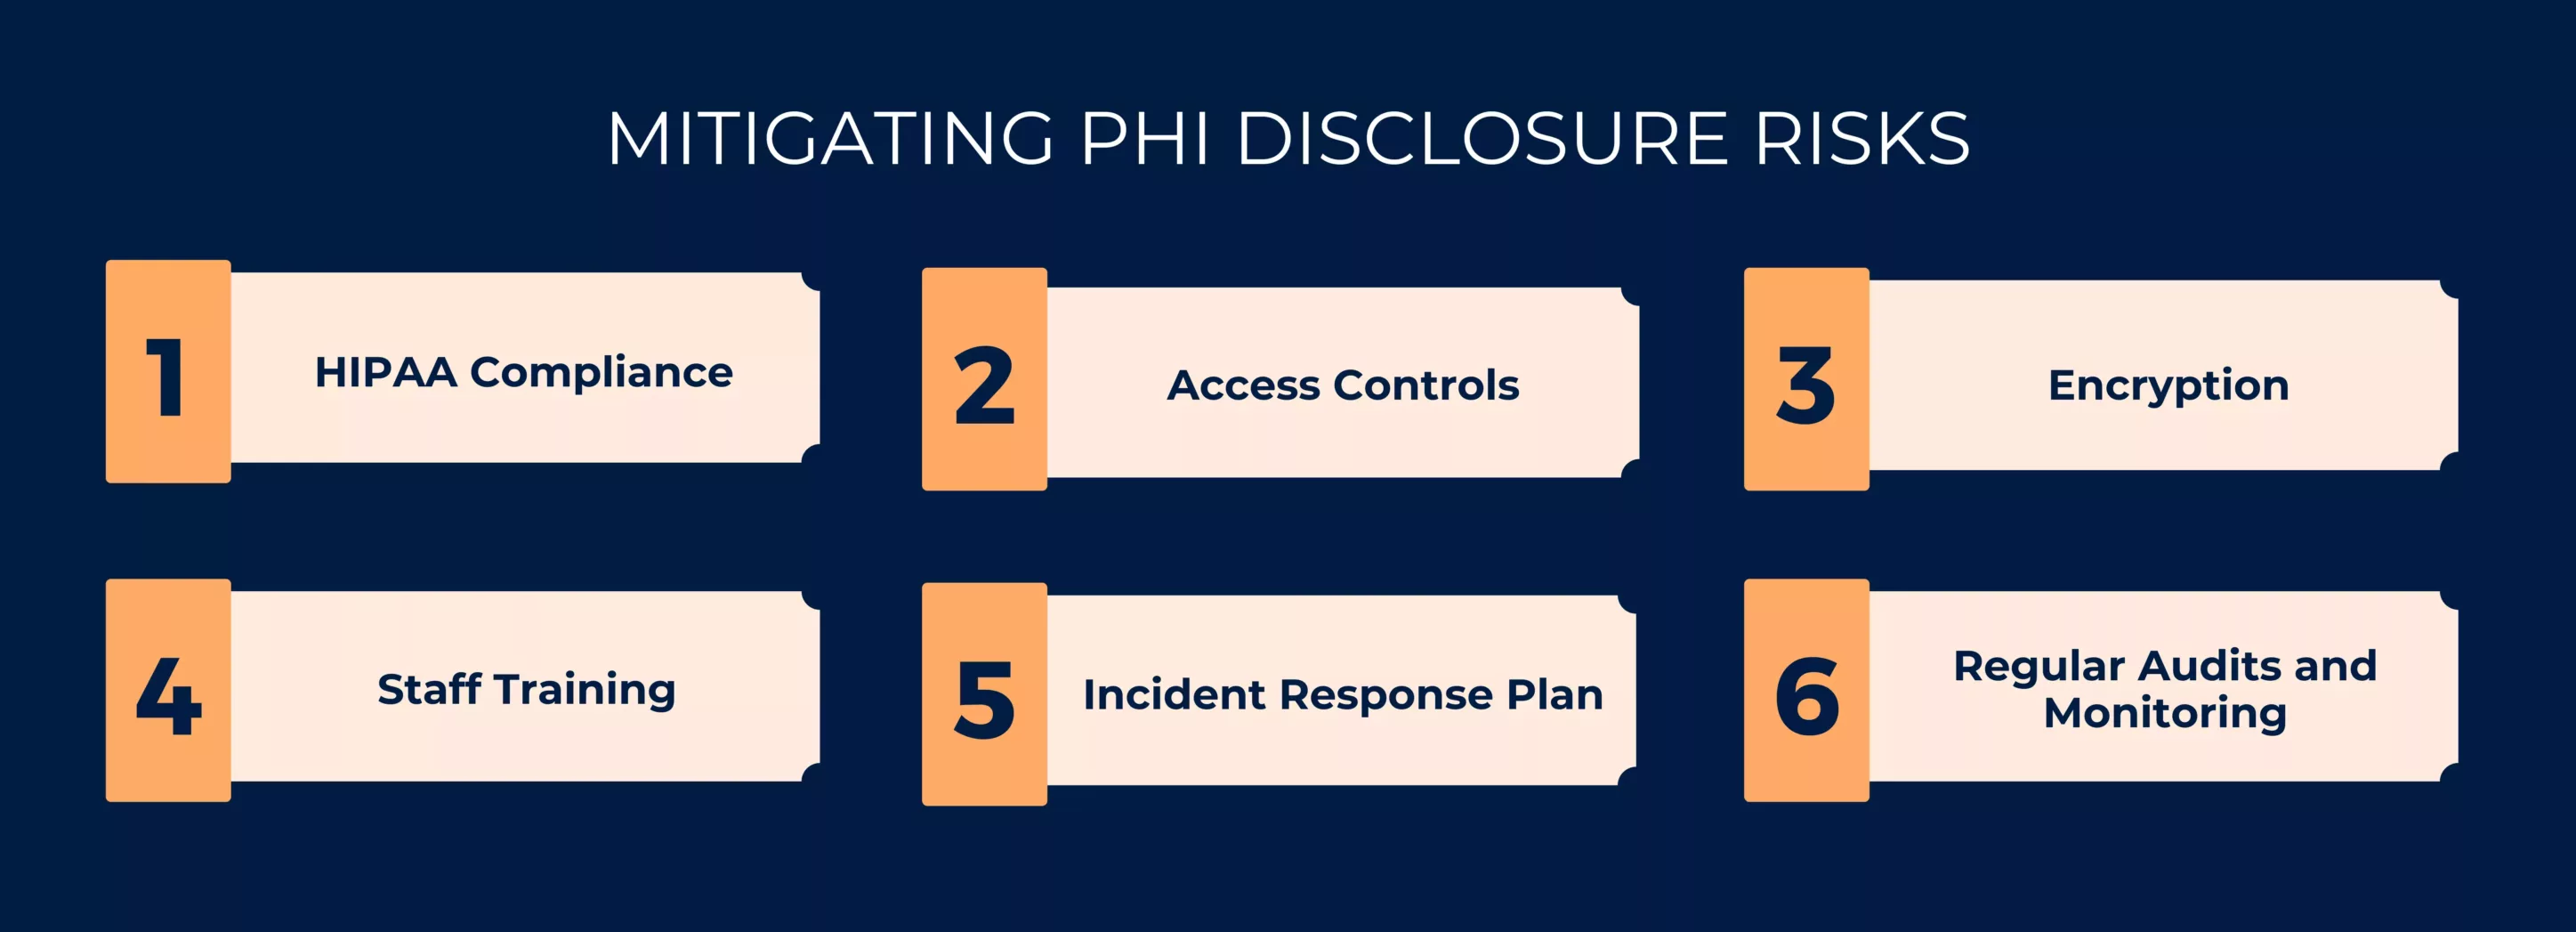 Mitigating PHI Disclosure Risks